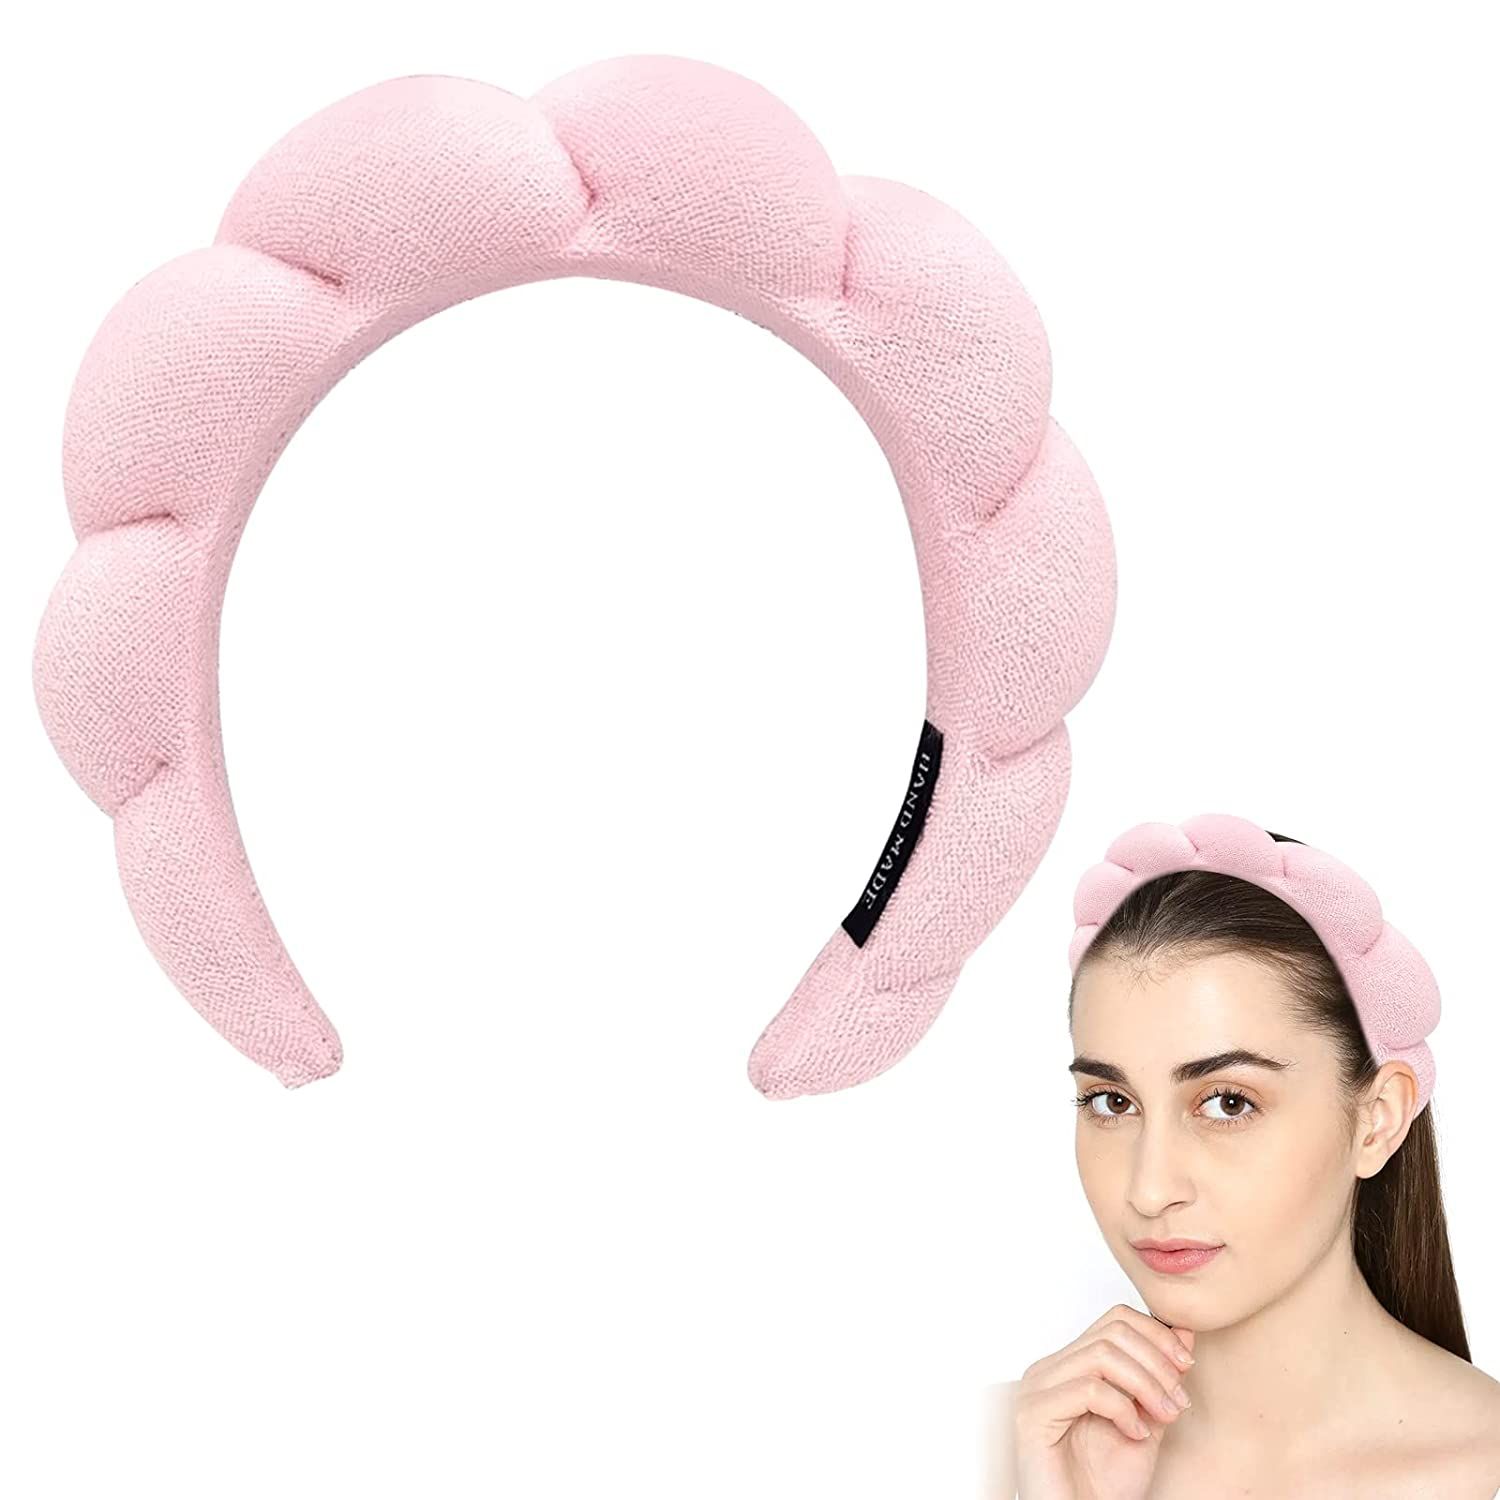 Spa Headband for Women, Makeup Headband, Spa Headband for Washing Face, Skincare Headbands for Fa... | Amazon (US)